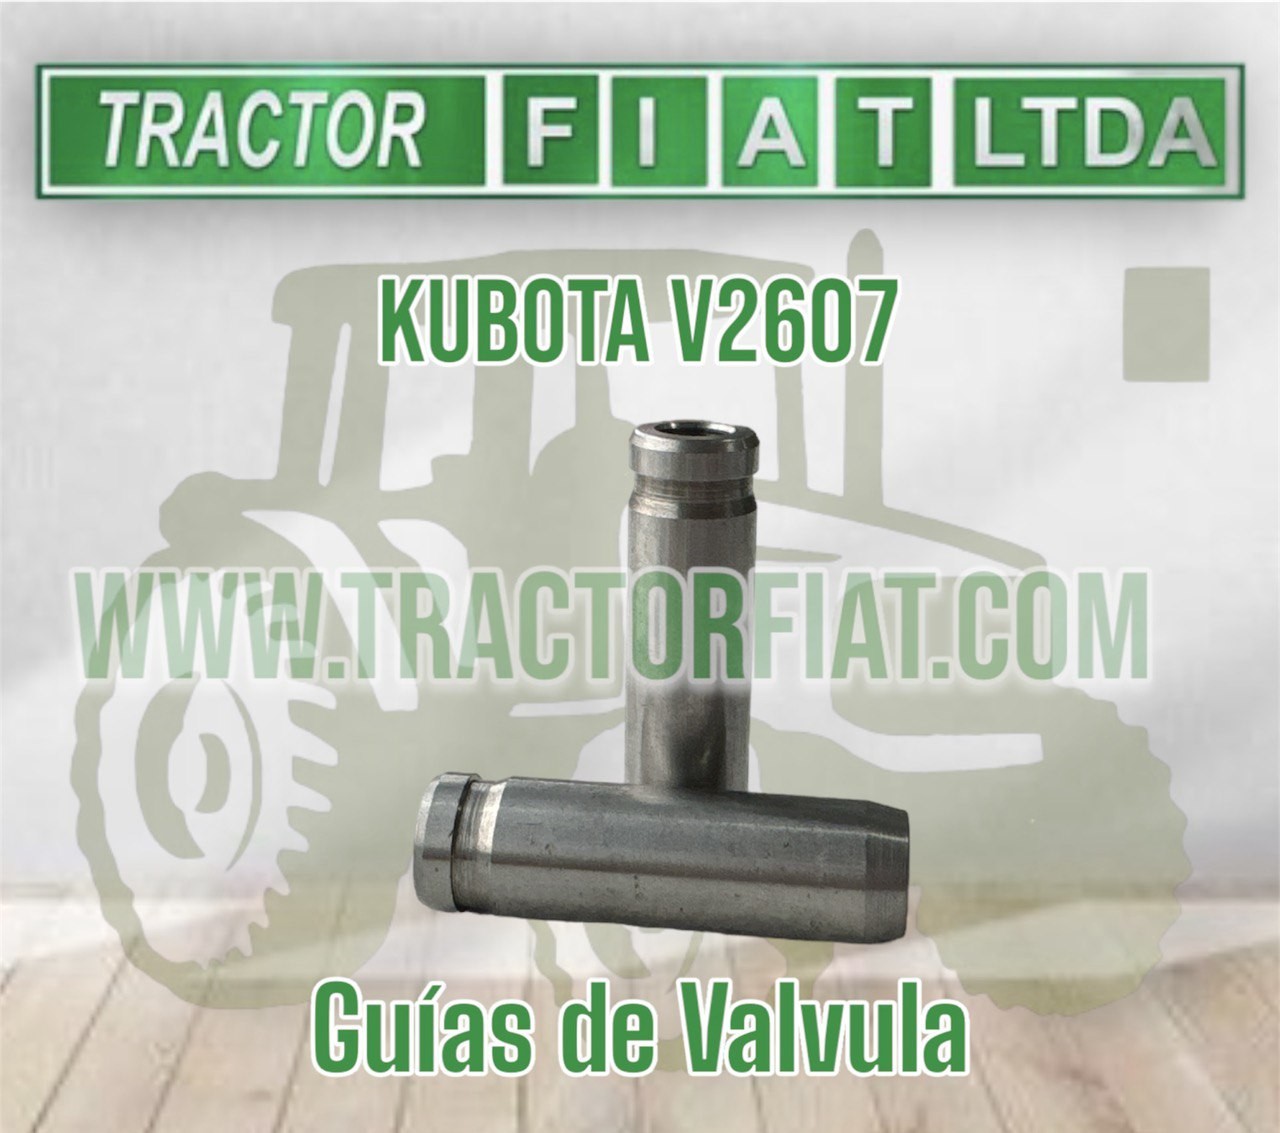 GUIAS  DE VALVULA -MOTOR KUBOTA V2607